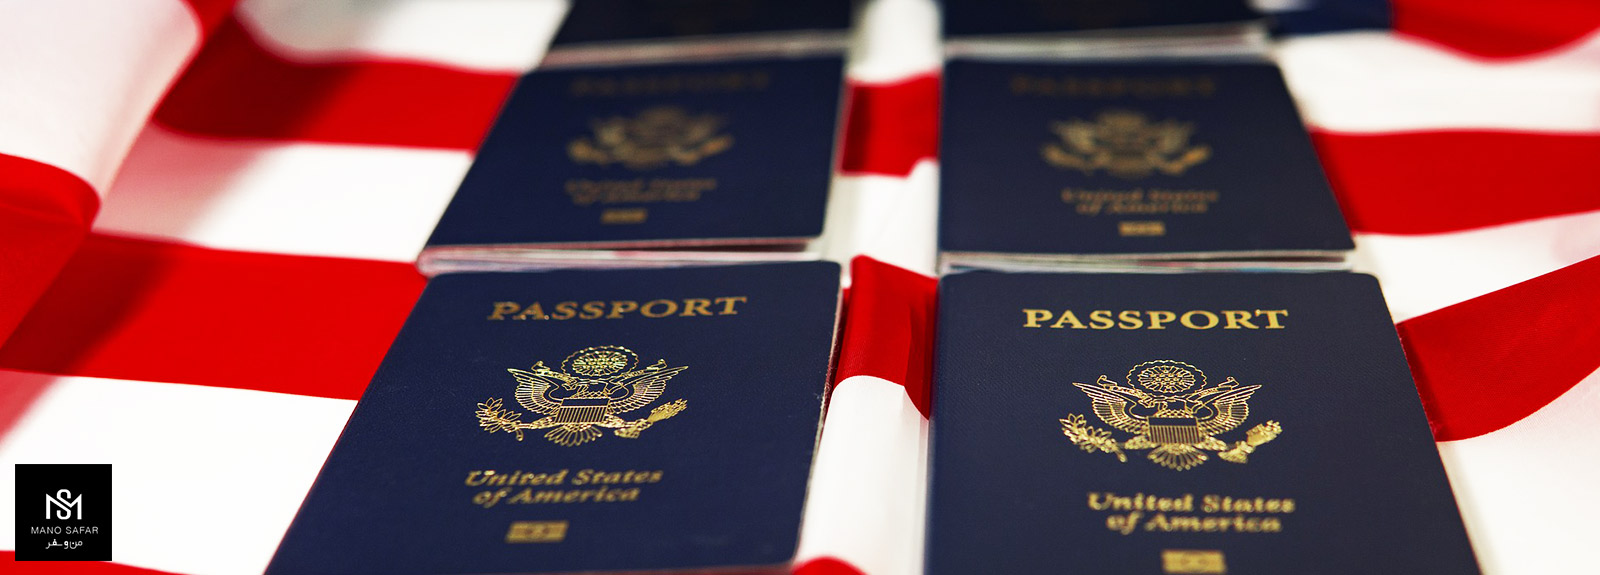 ویزای توریستی گروهی چیست؟ (شرایط اخذ و قوانین) Tourist Group Visa